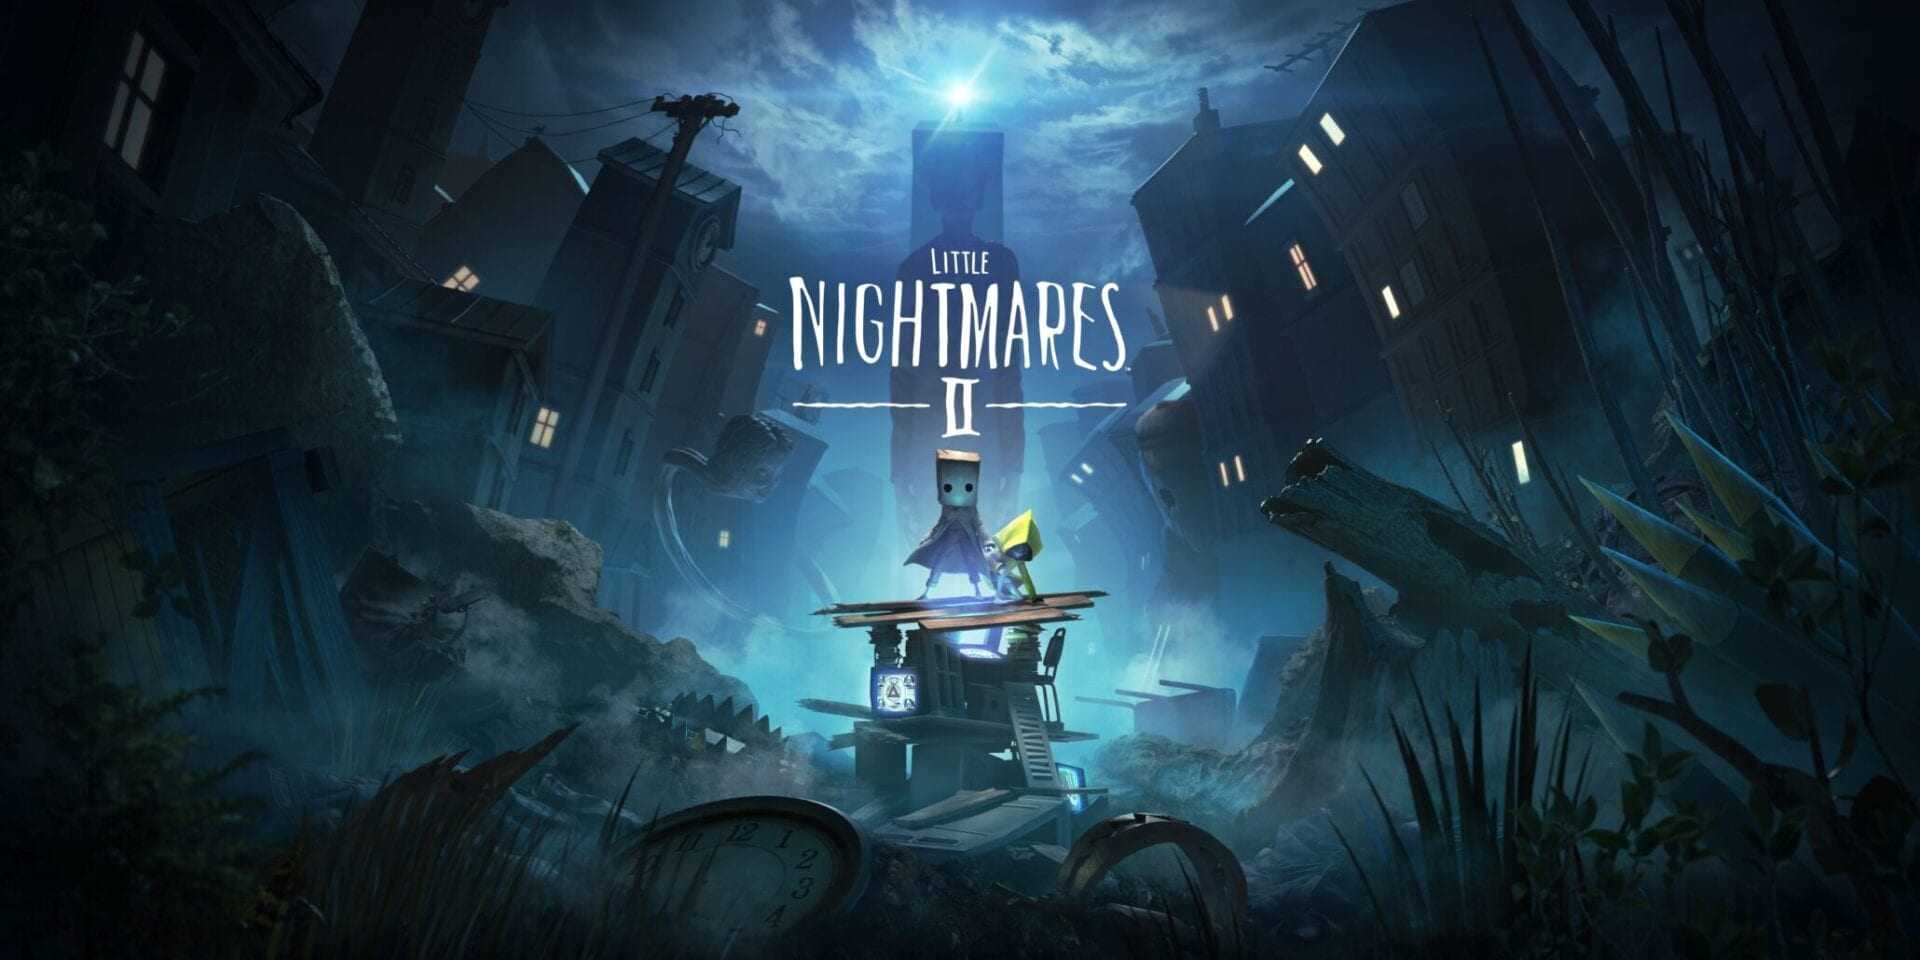 Little Nightmares II – Gameplay Trailer